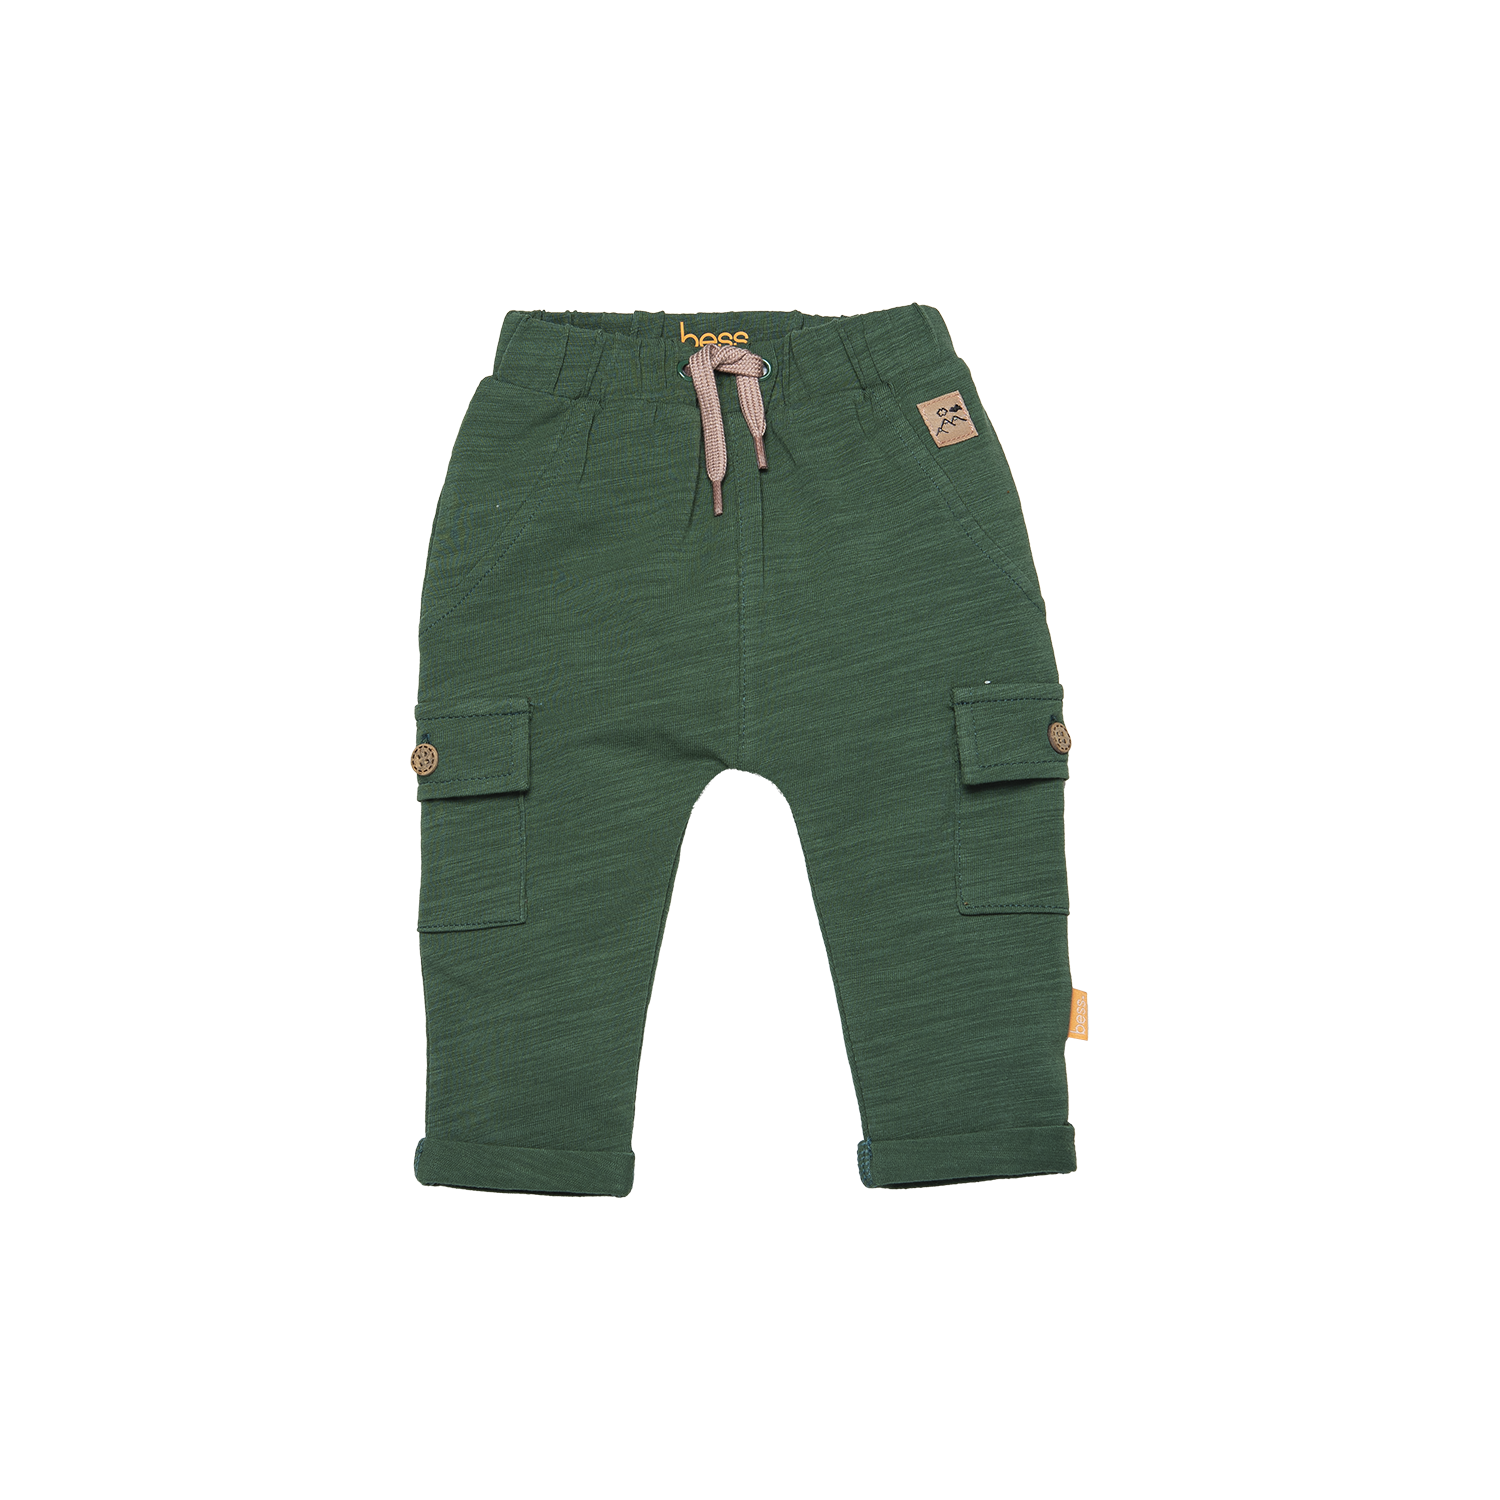 Jongens Pants Cargo Sweat van B.E.S.S. in de kleur Green in maat 68.